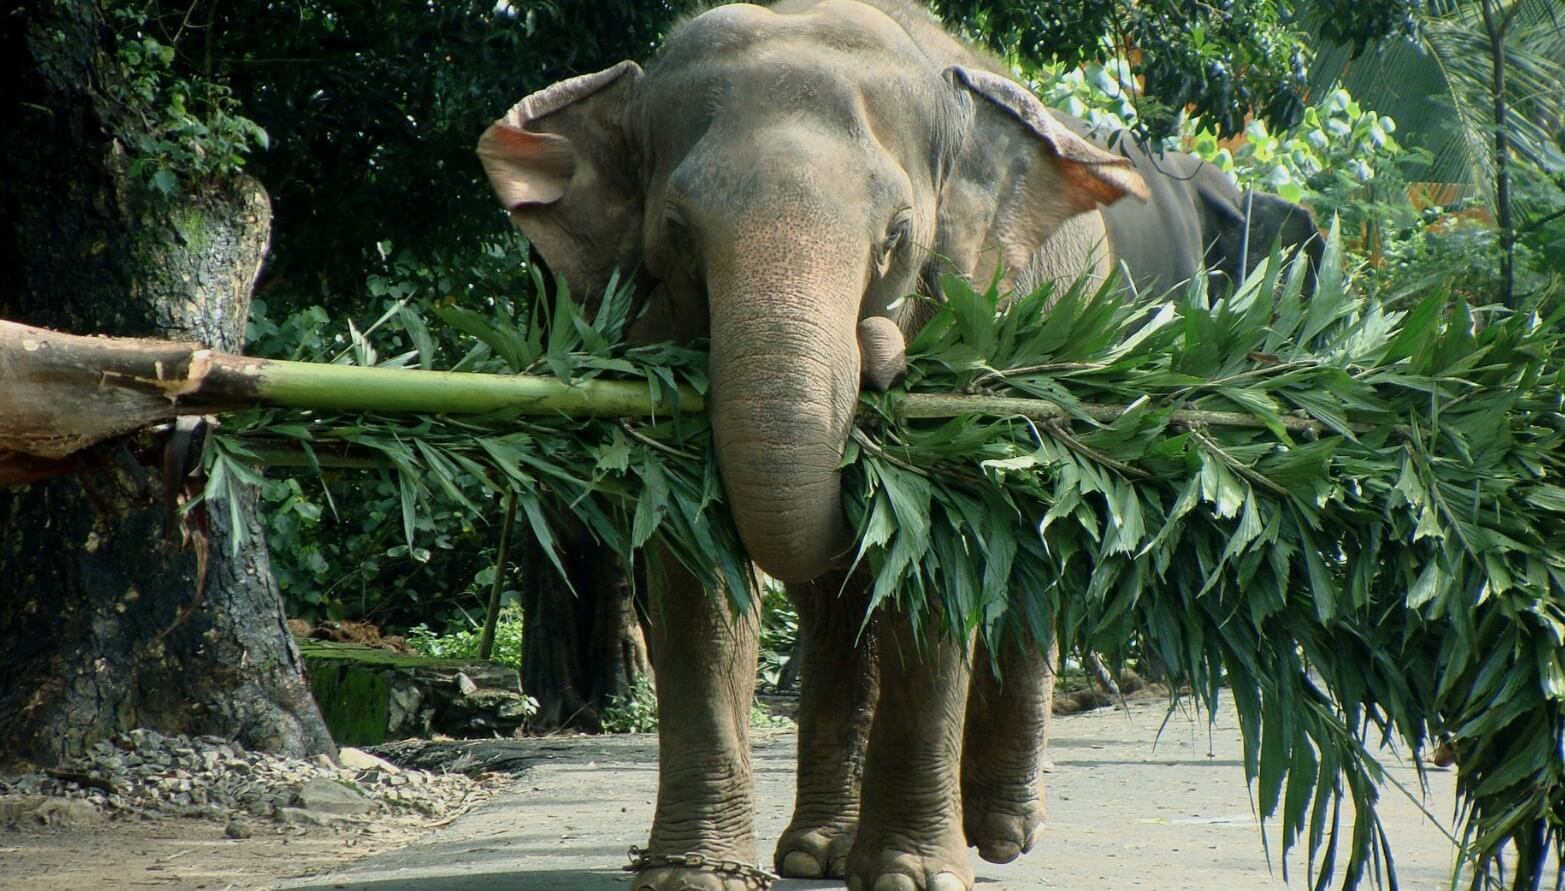 Какой вес может поднять слон. Индийские слоны могут поднять груз весом до 300 килограммов. Фото.